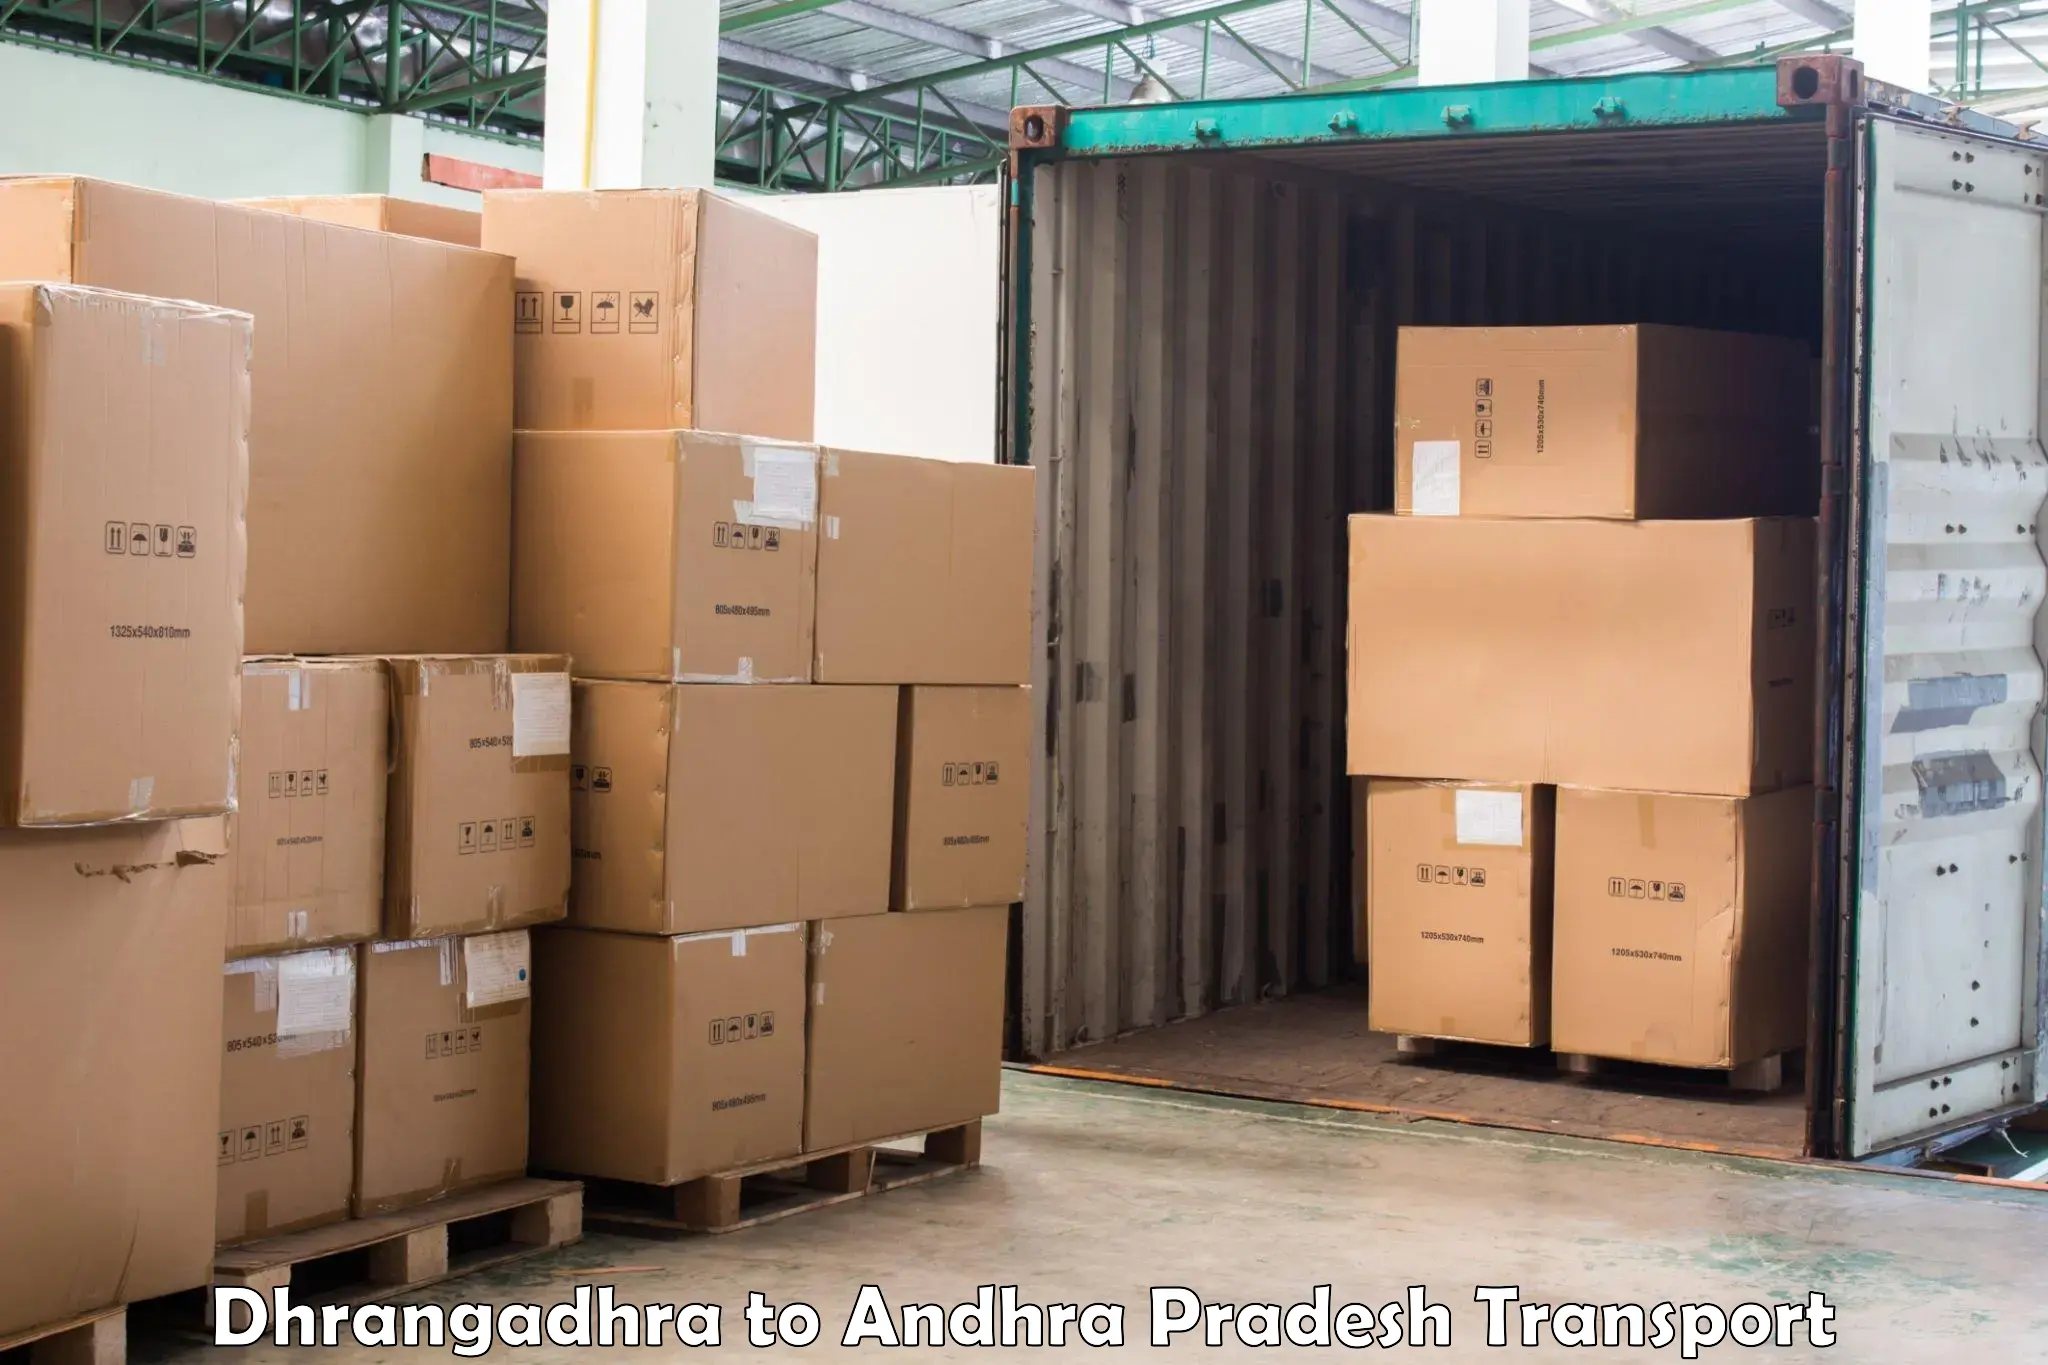 Express transport services Dhrangadhra to Kadiri